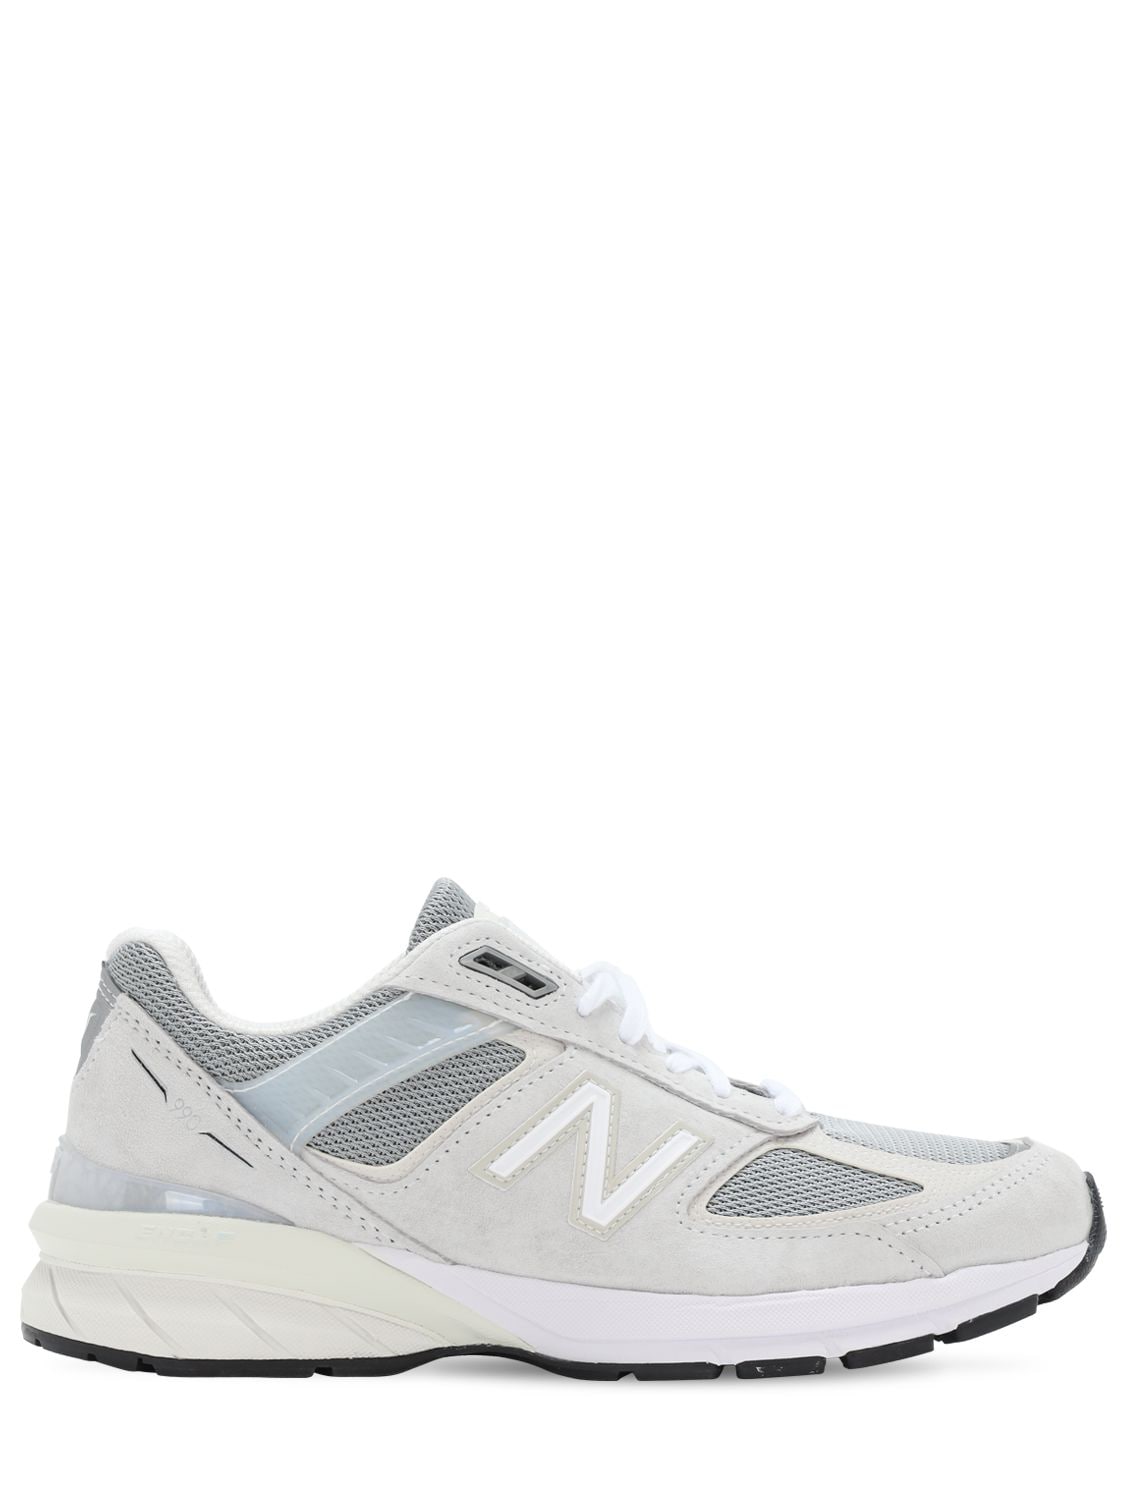 New Balance “990 V5”麂皮&网眼运动鞋 In White